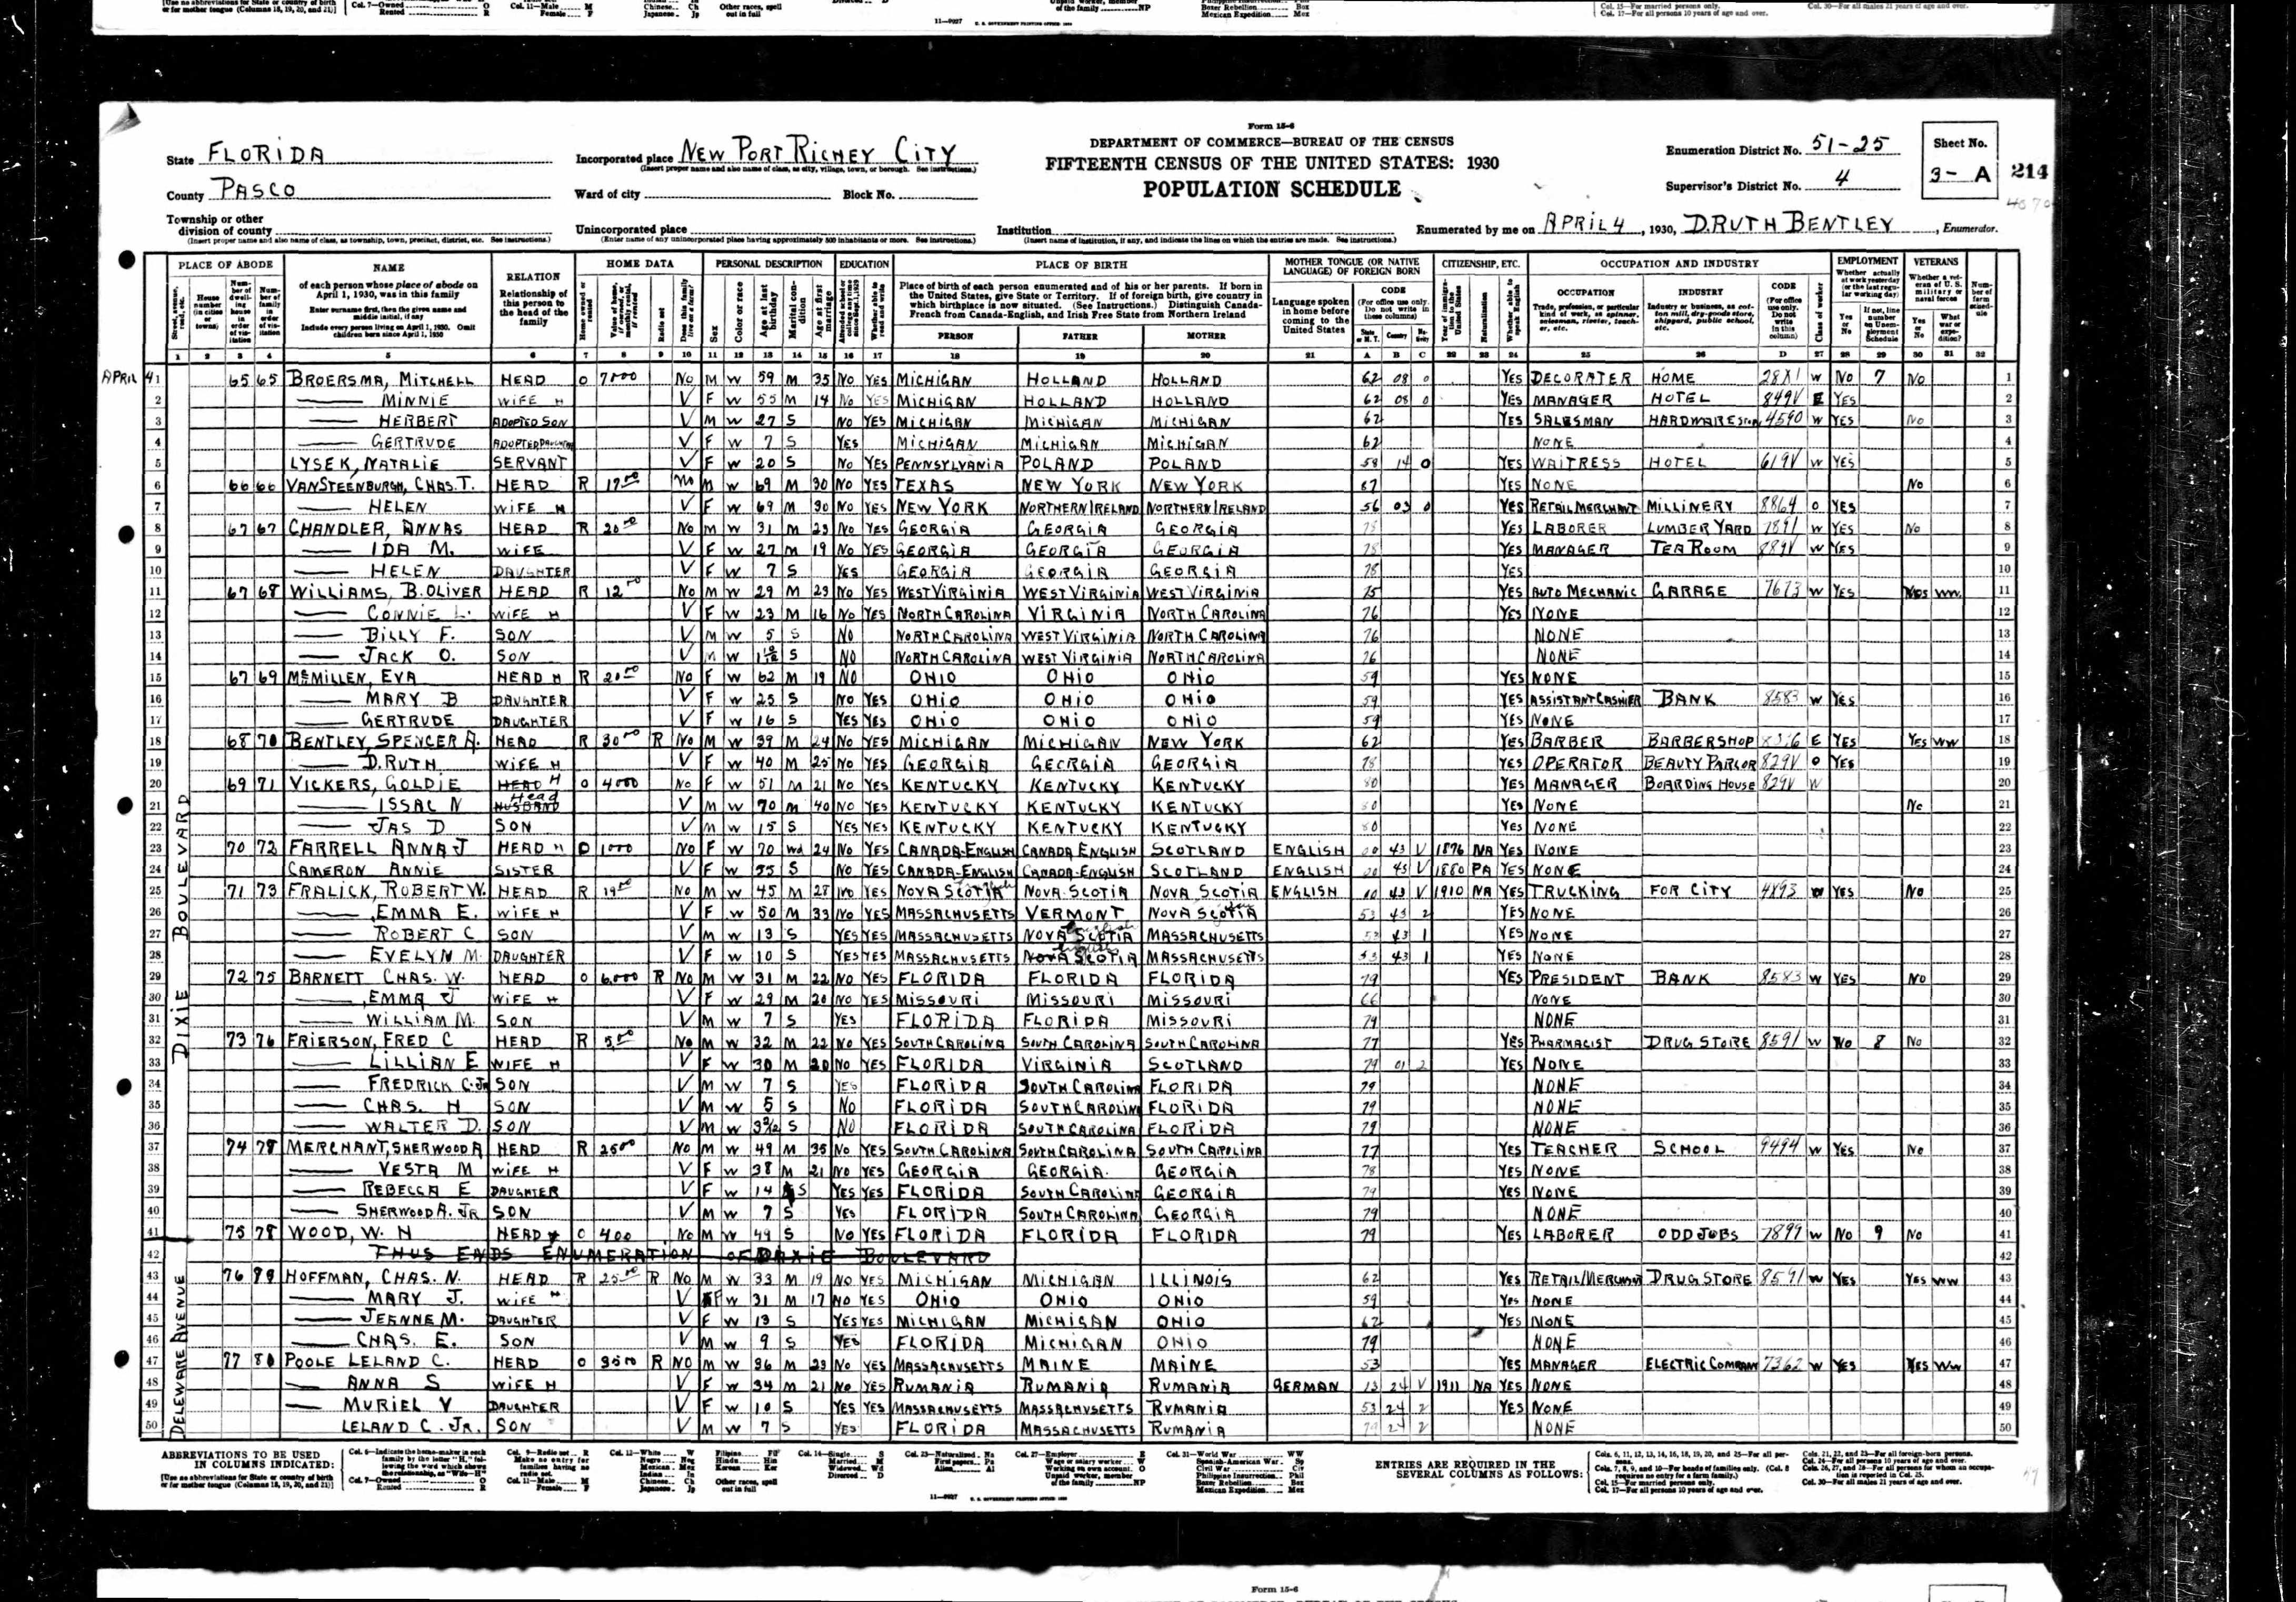 1930 US Census, Leland Poole, line 47